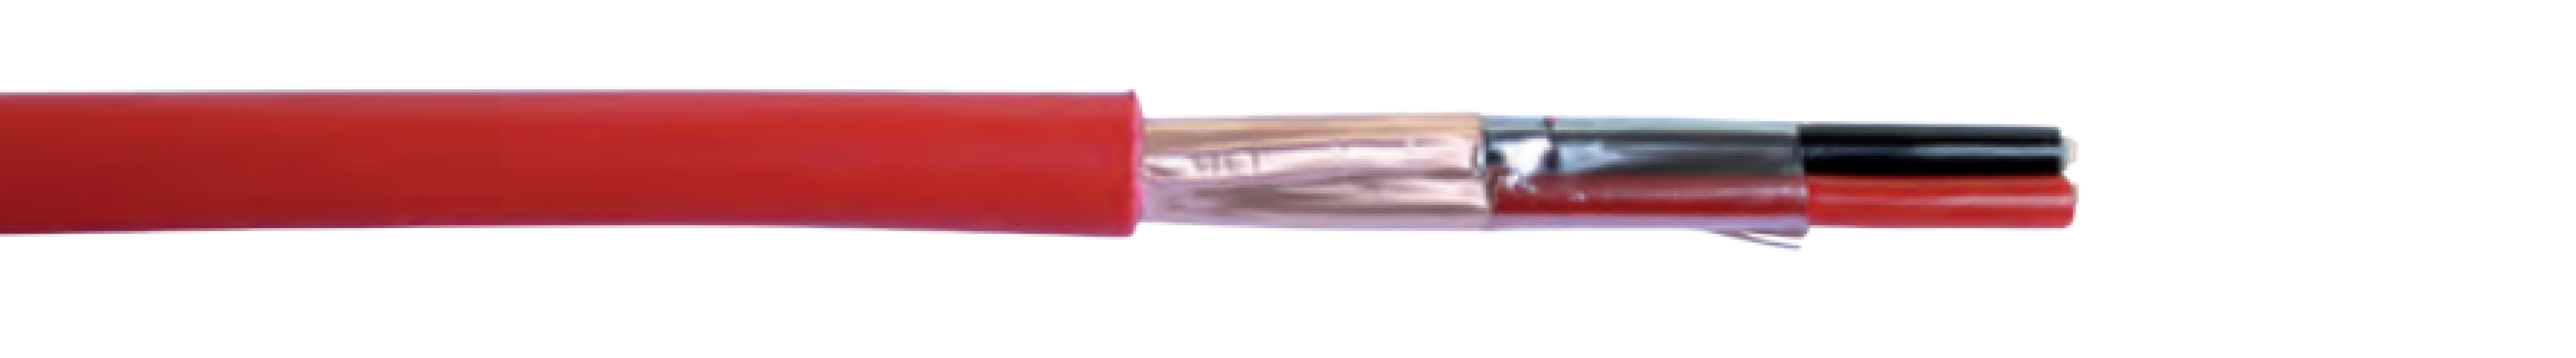 Cavo antincendio Micro Tek diametro esterno 6.6mm rosso vendita al metro - FRT2100100 01